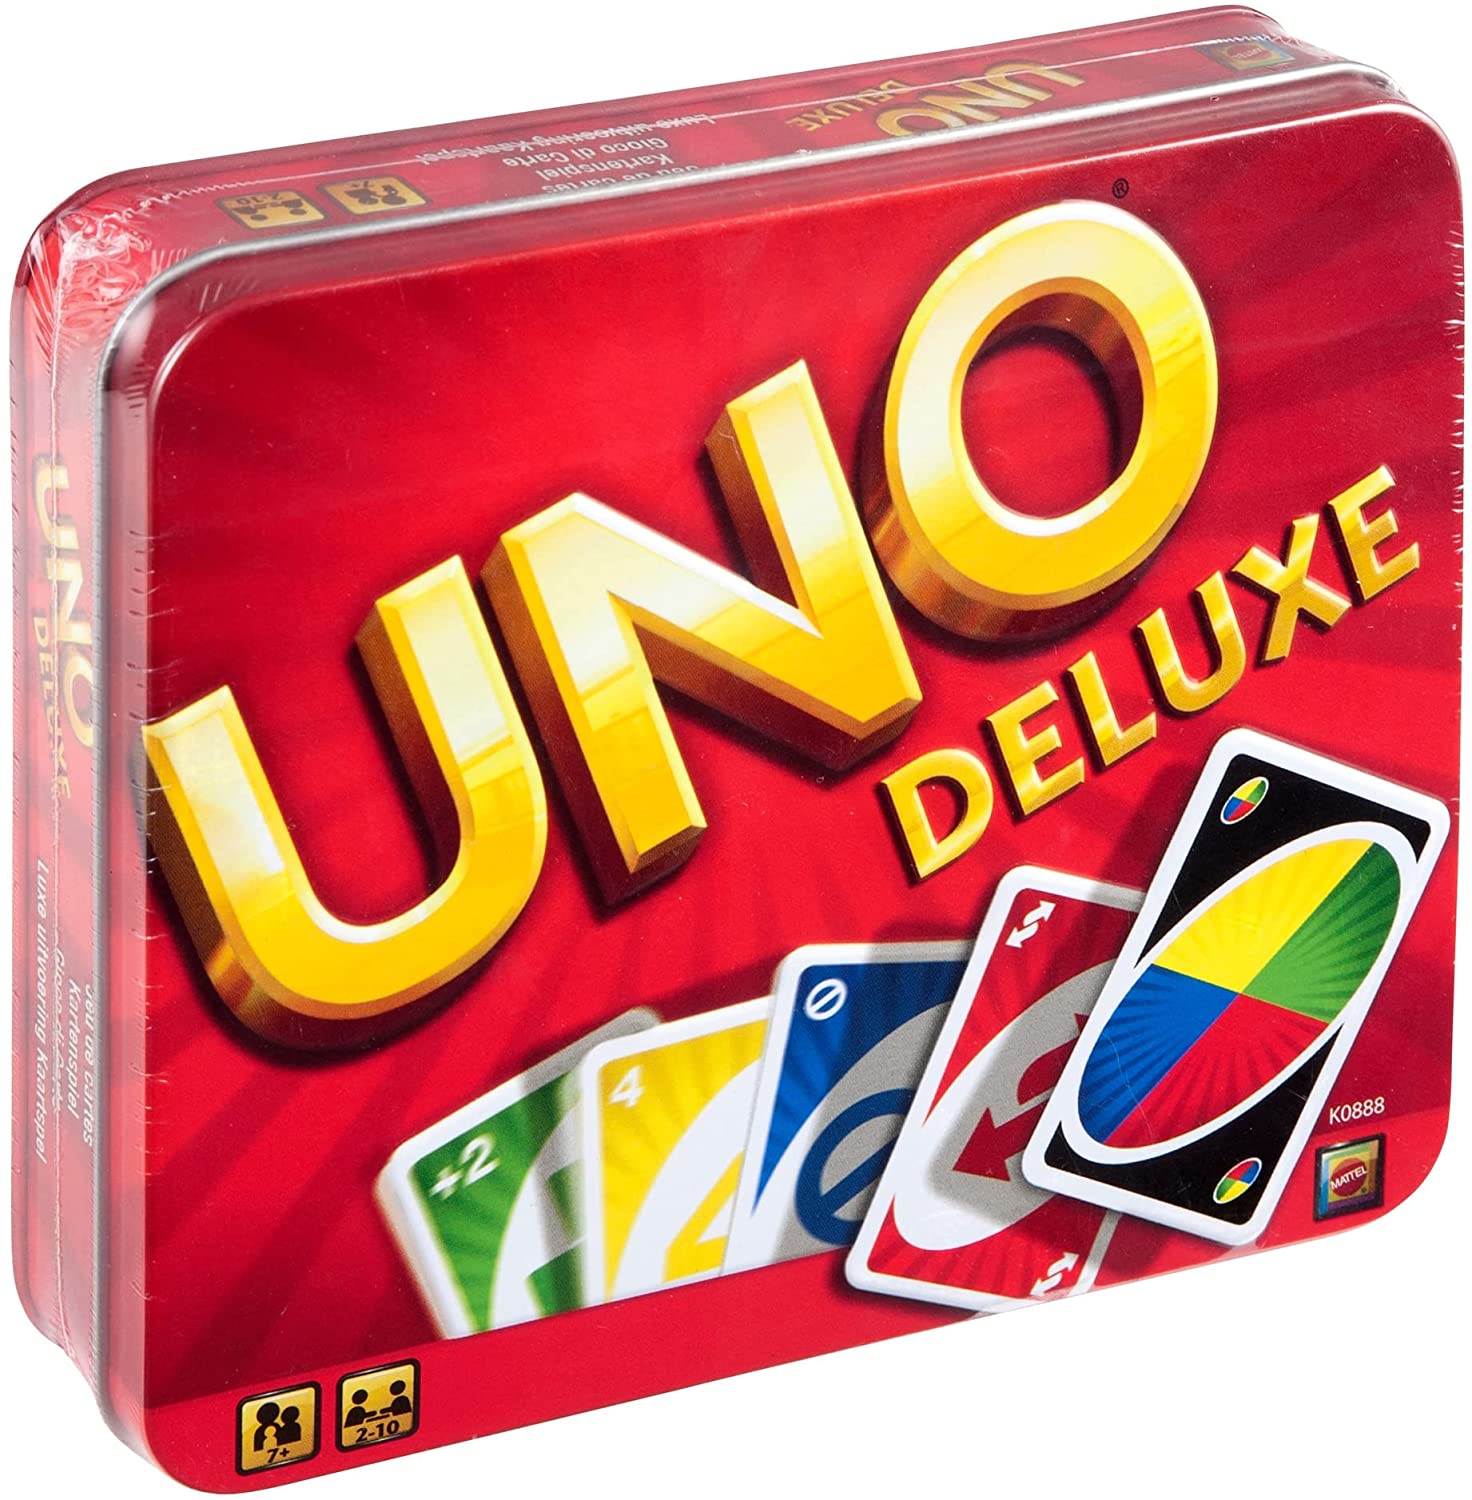 UNO Deluxe, Kartenspiel